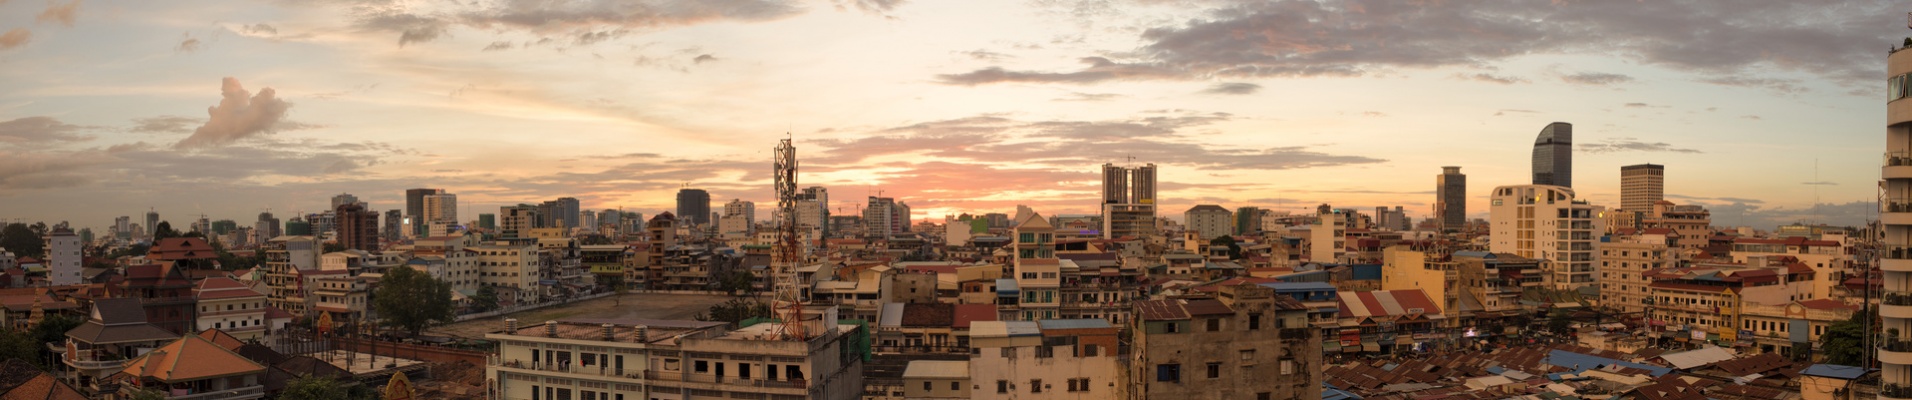 phnom penh panorama sunset